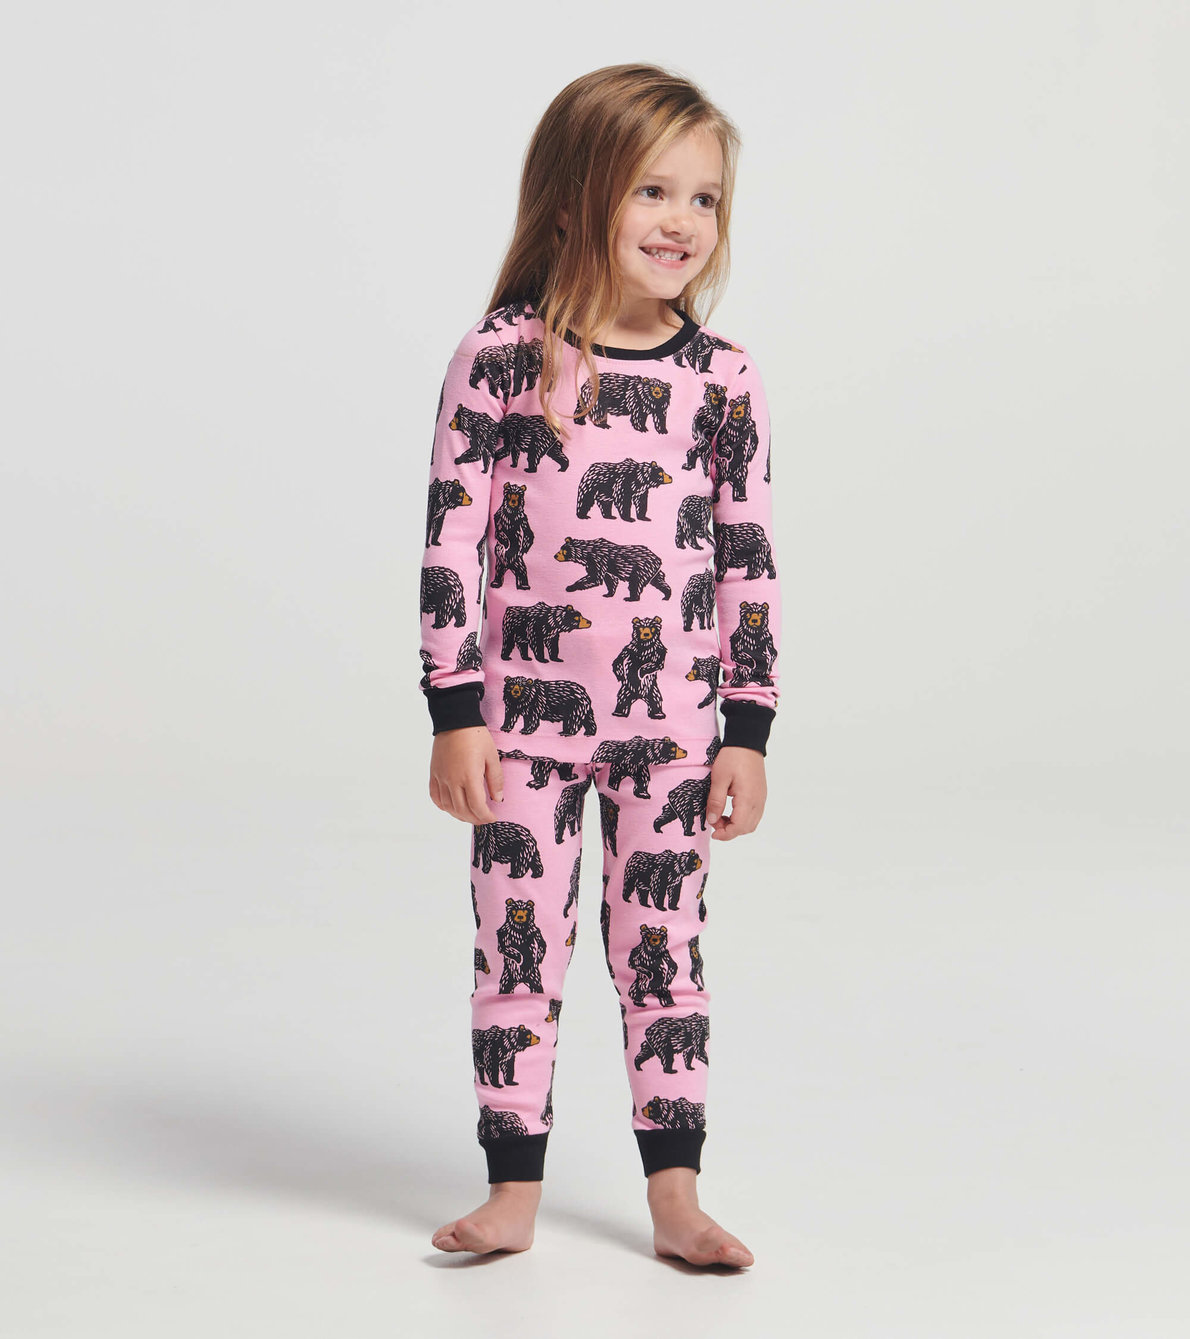 View larger image of Pink Wild Bears Kids Pajama Set